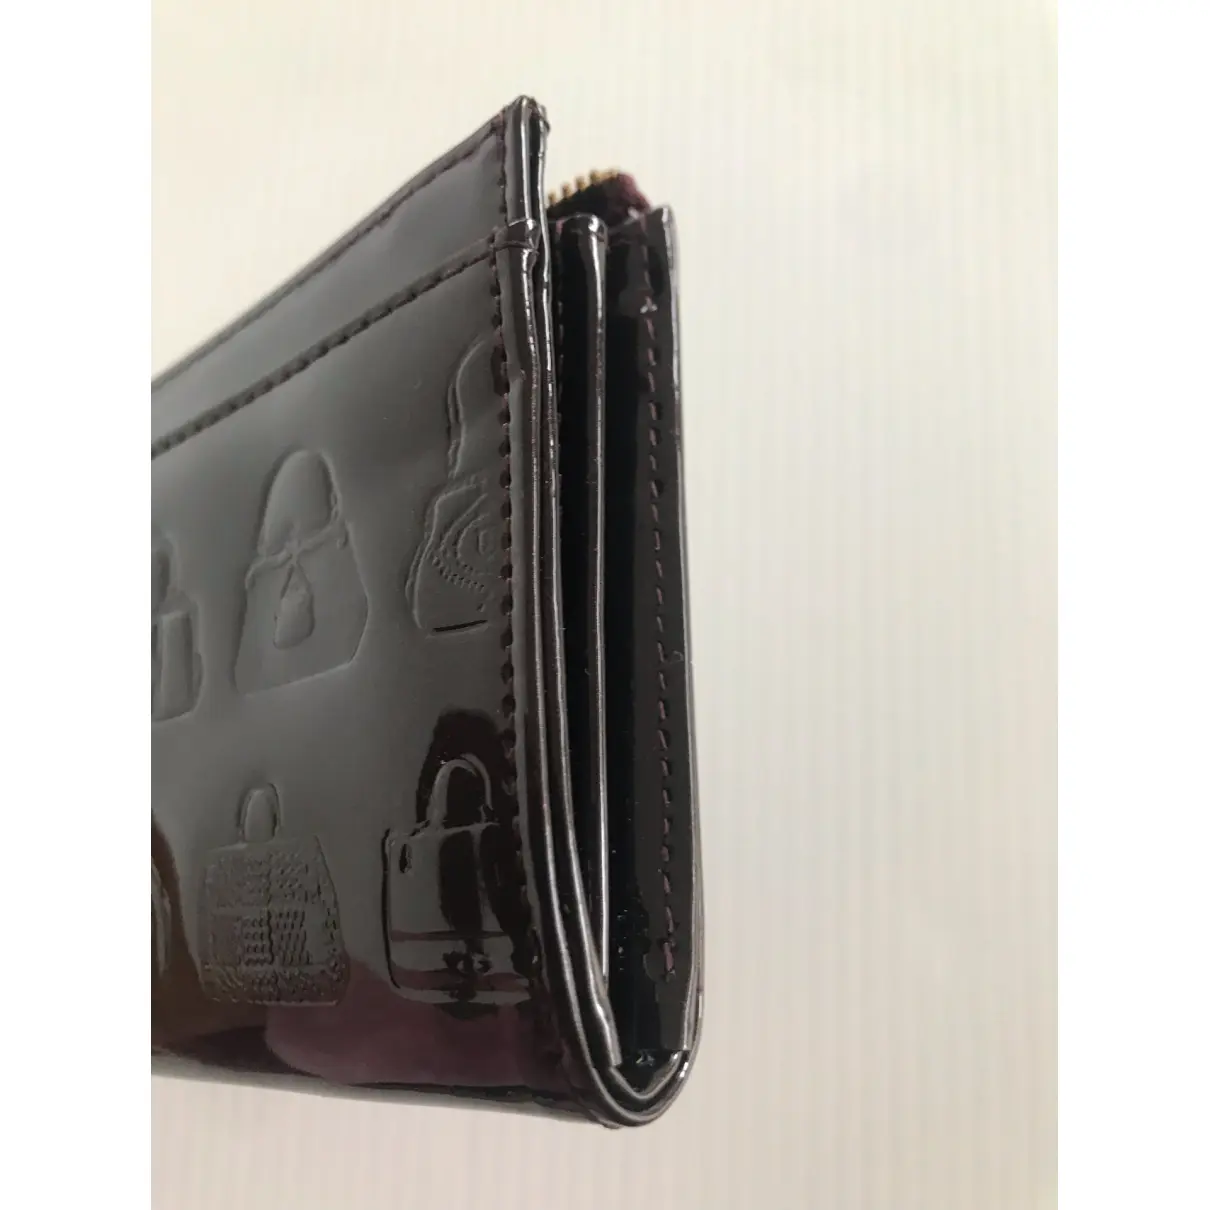 Patent leather wallet ROBERTA DI CAMERINO